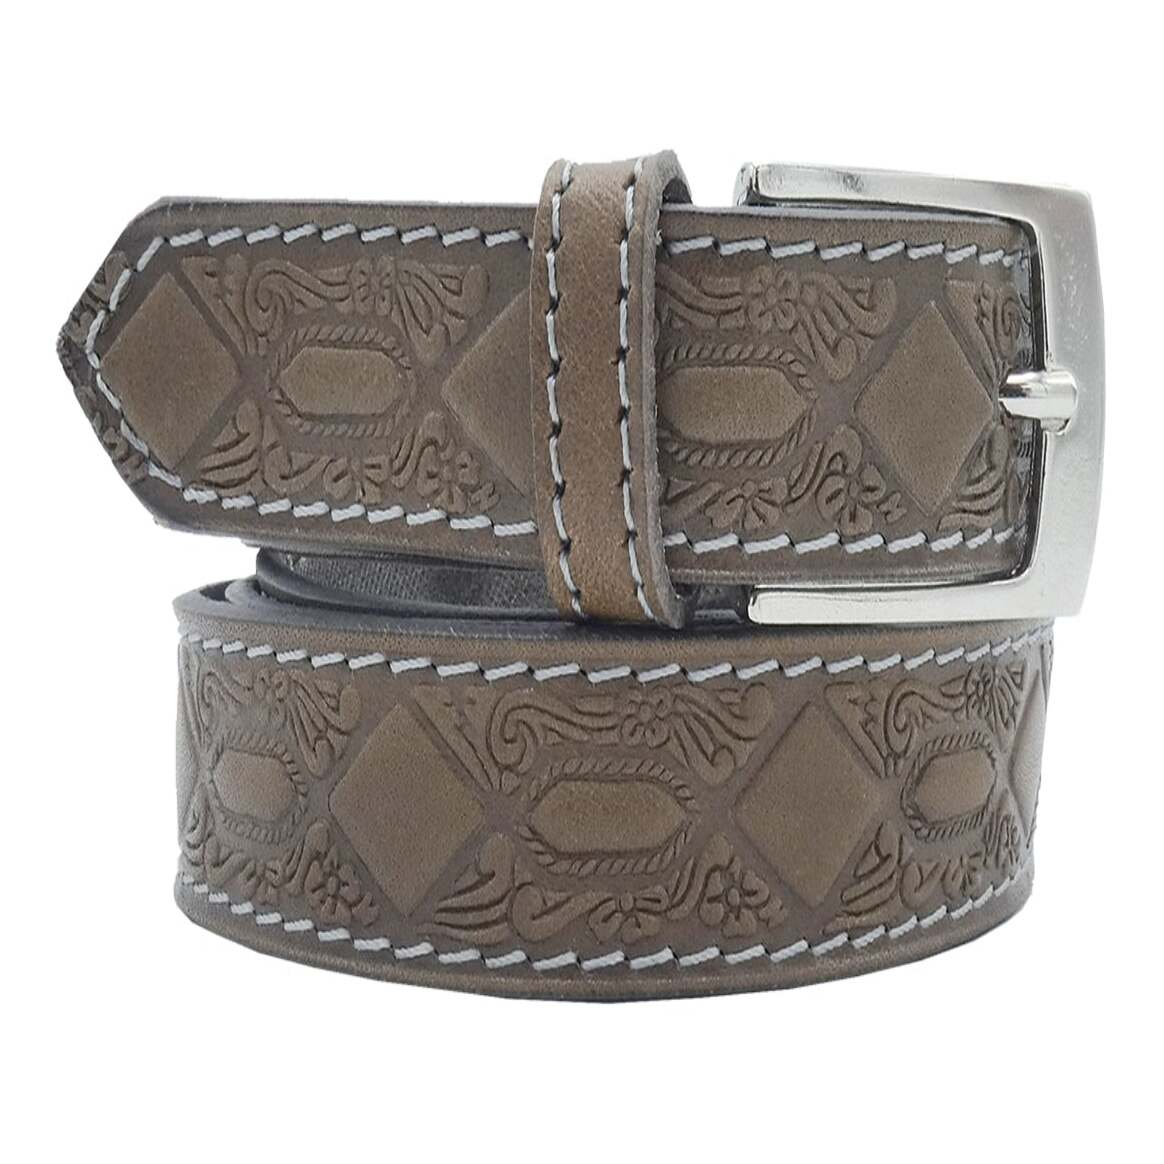 De Chirico Women's Belt in Hand Printed Leather with Satin Nickel Zamak Buckle